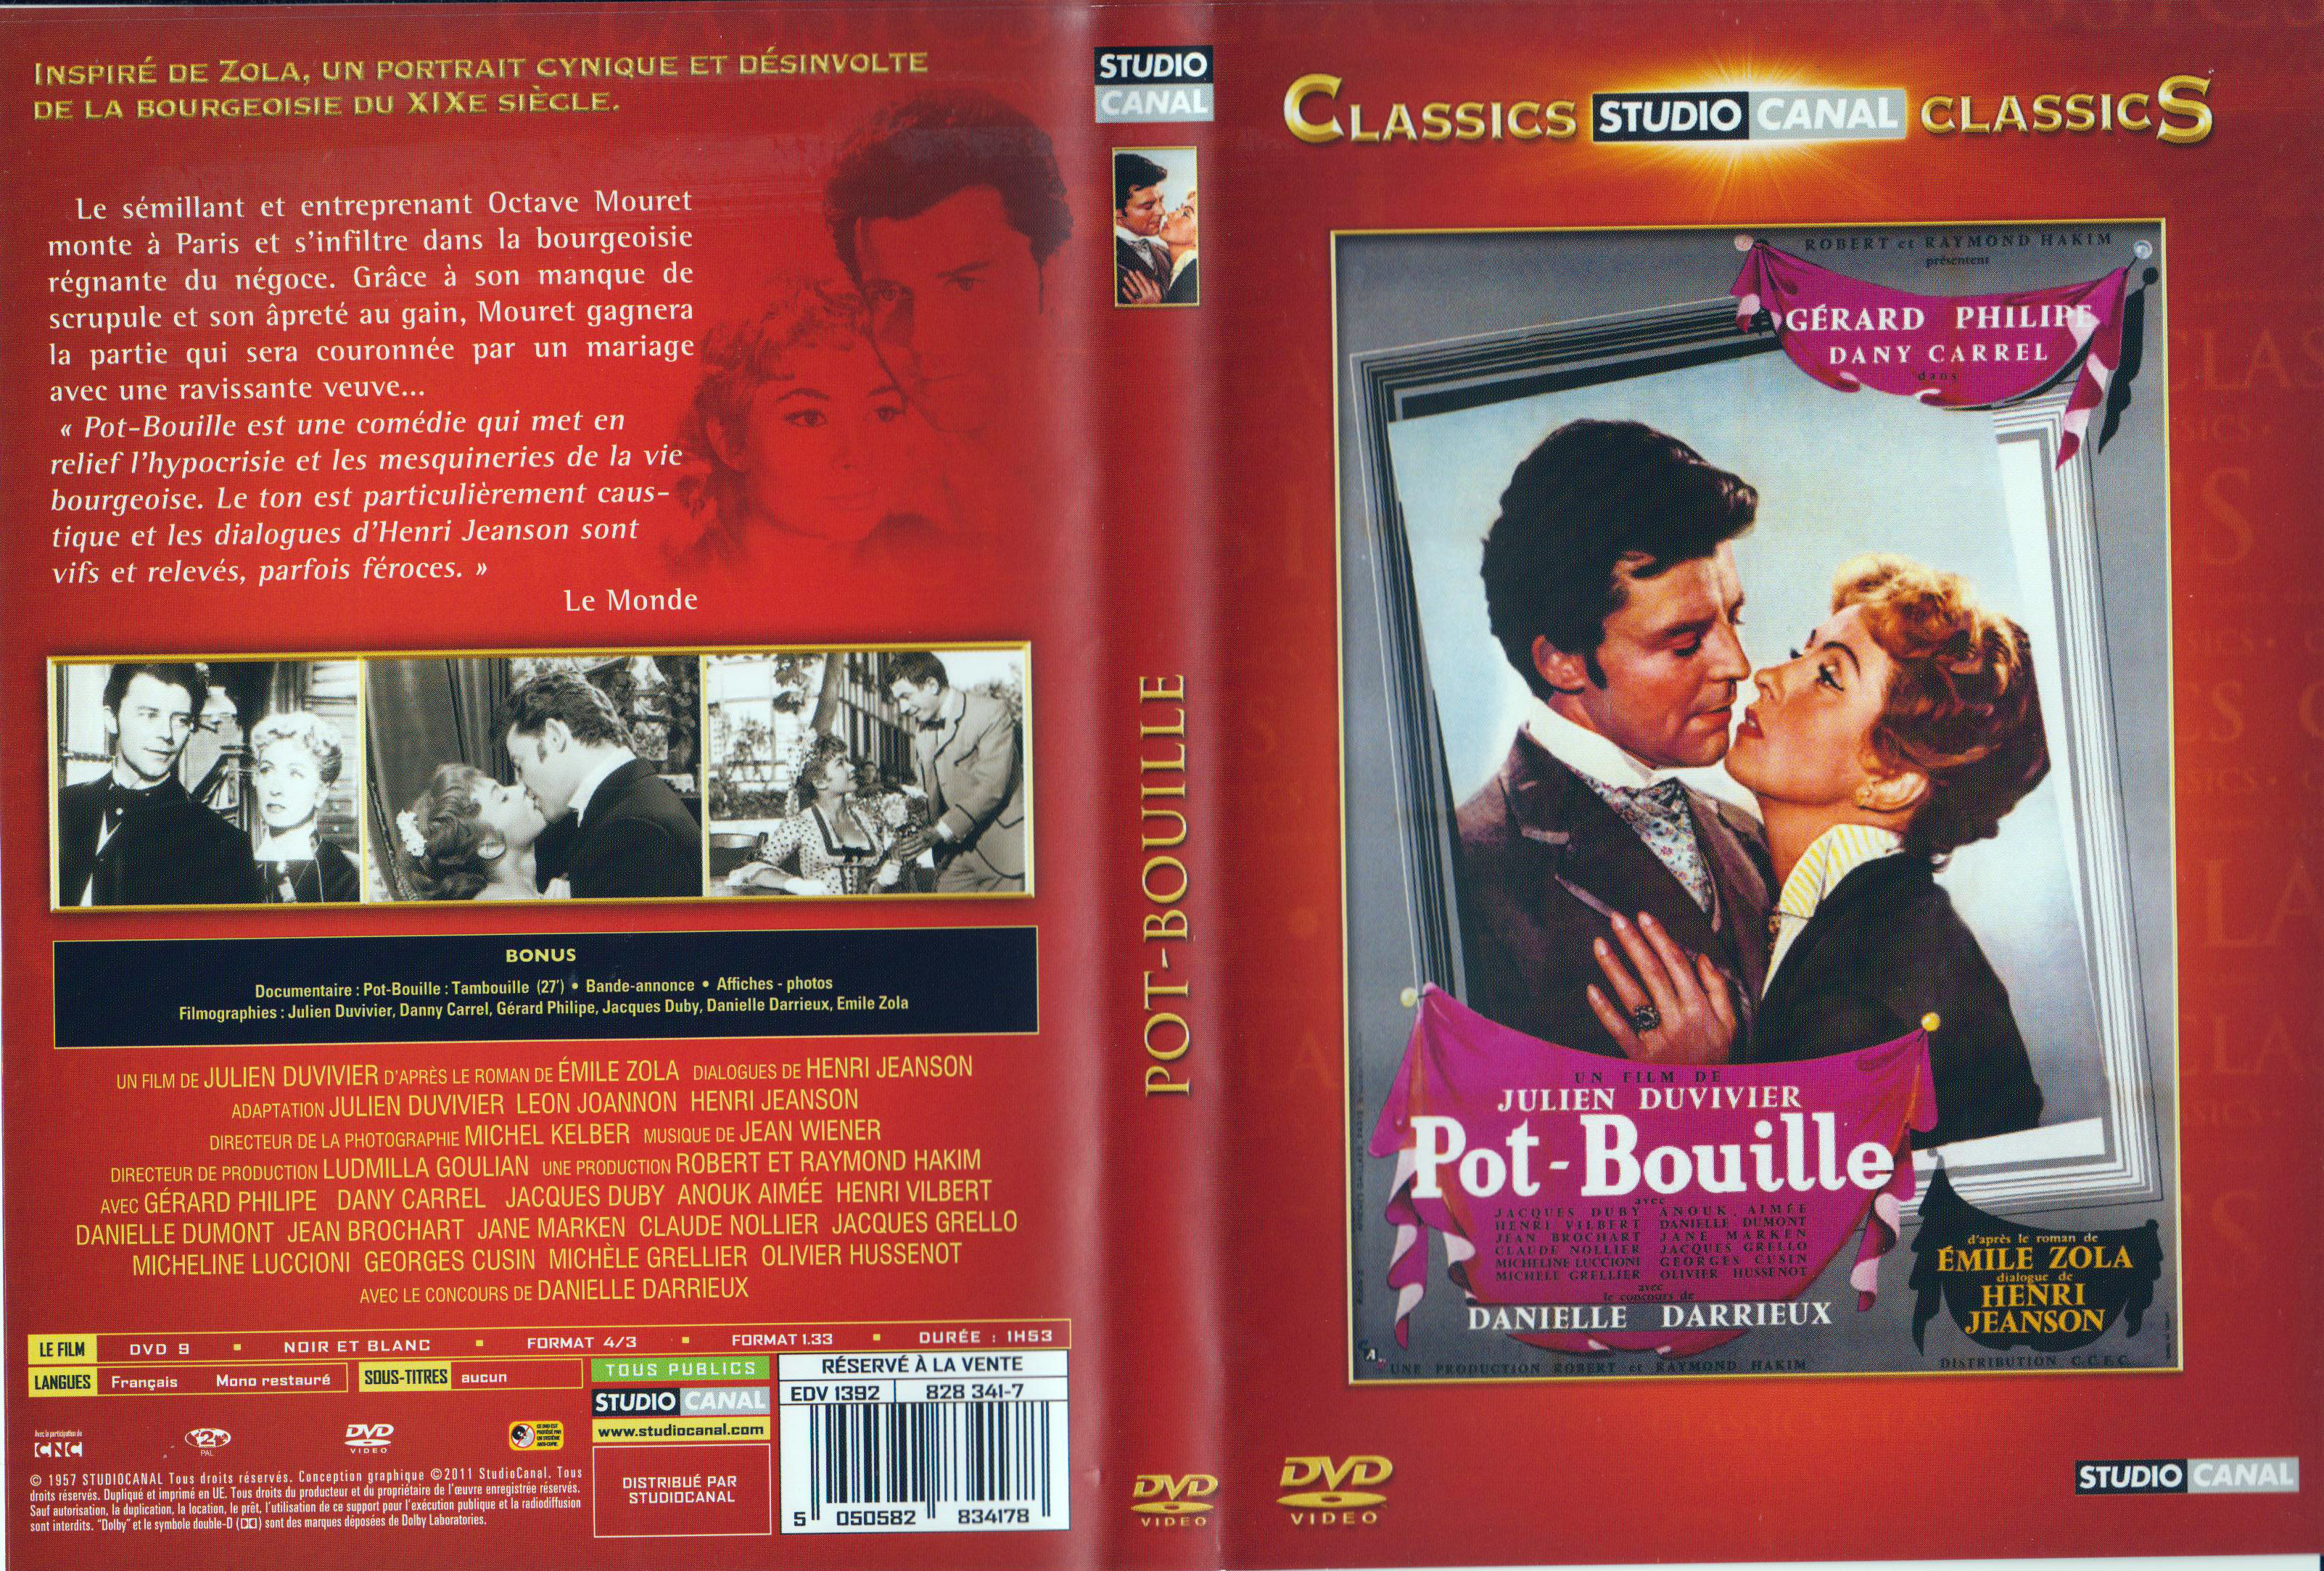 Jaquette DVD Pot-Bouille